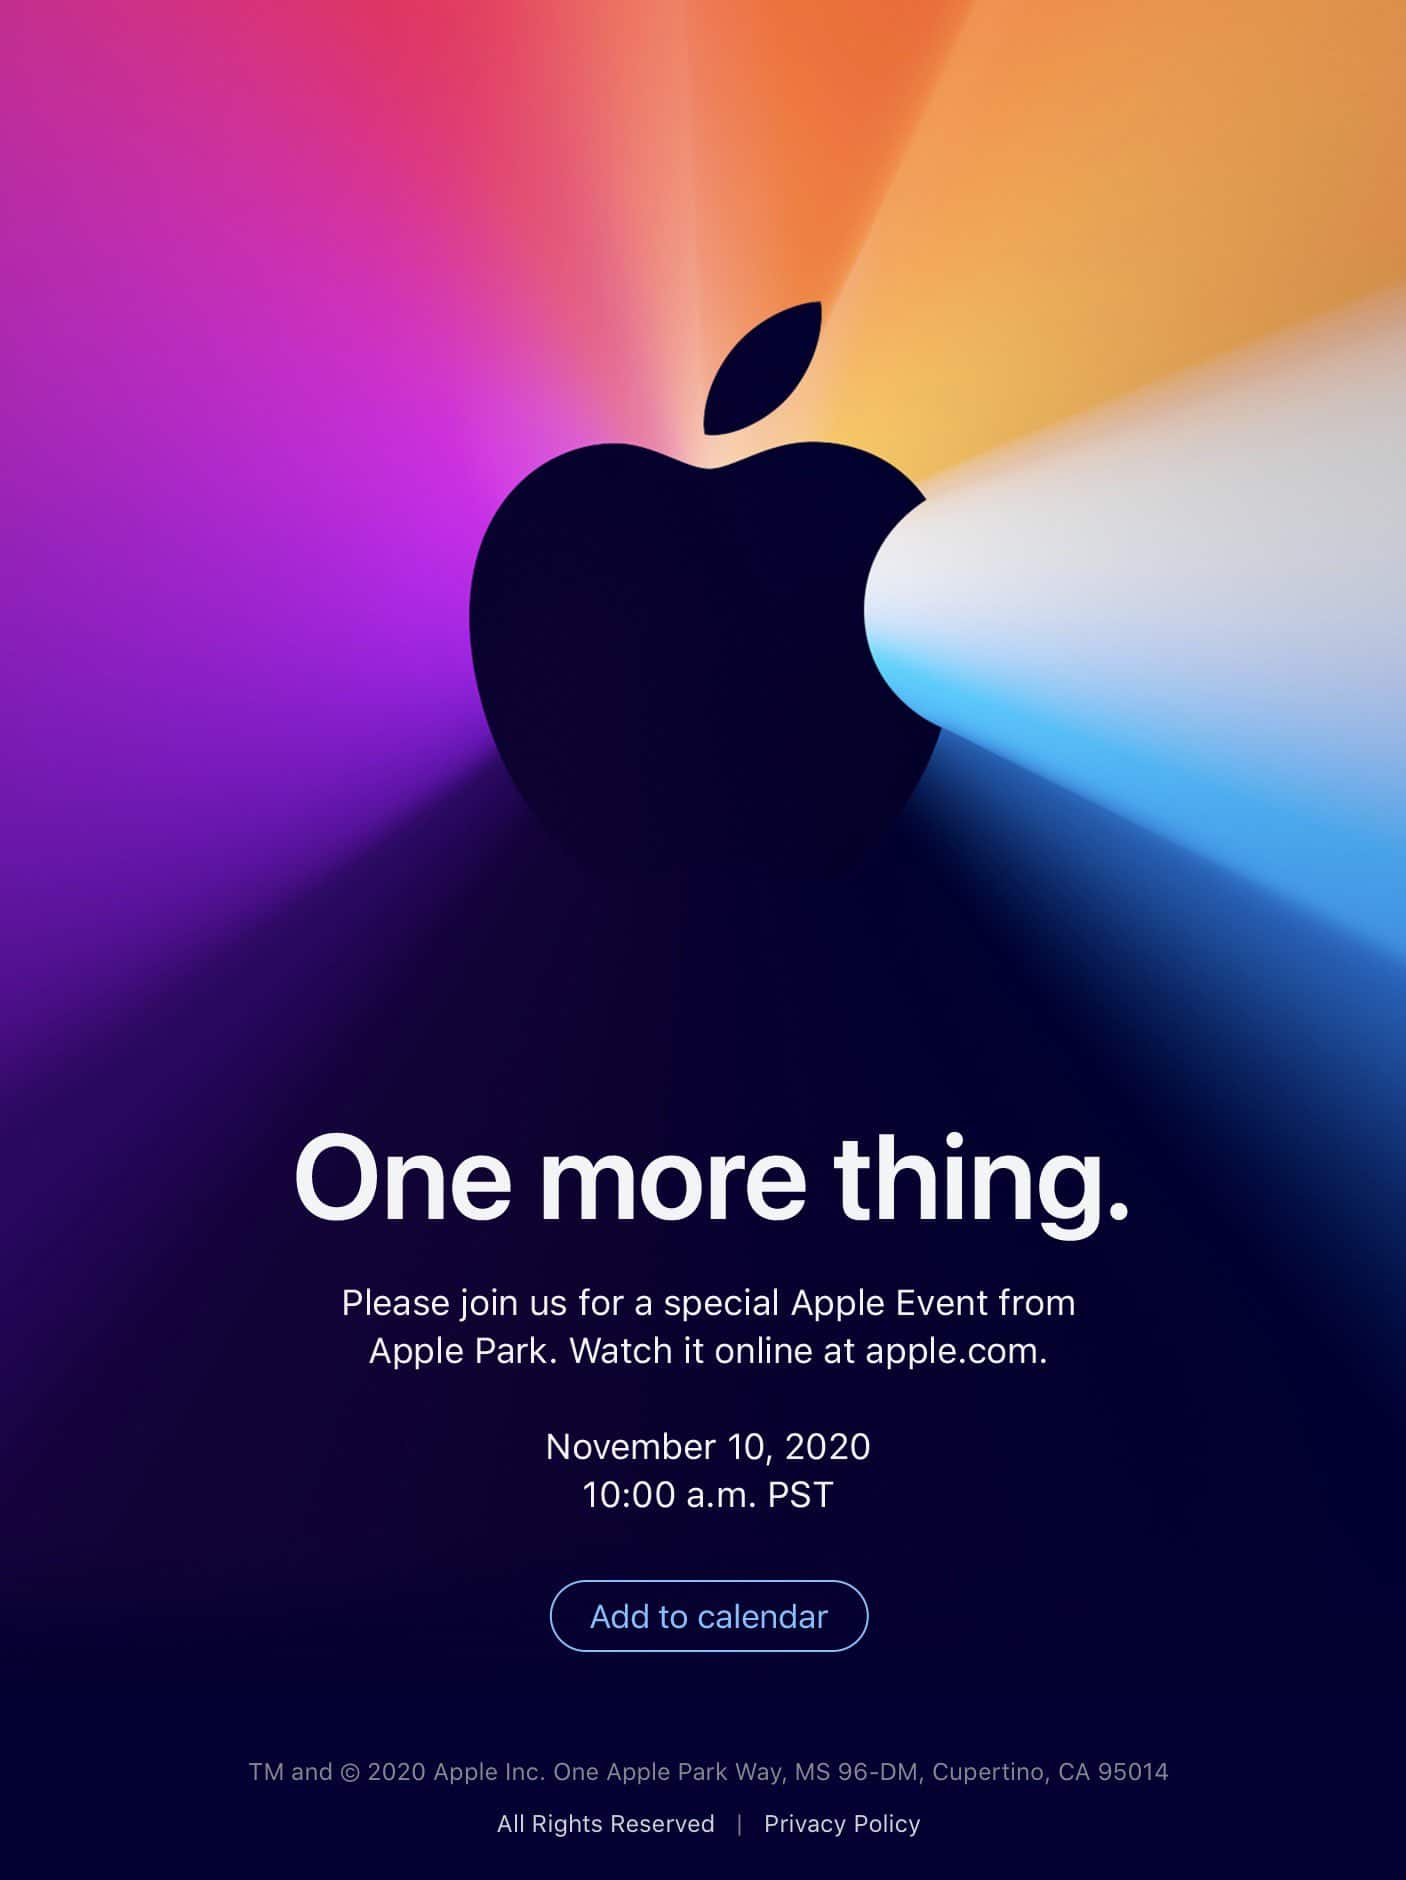 Apple Silicon Mac event